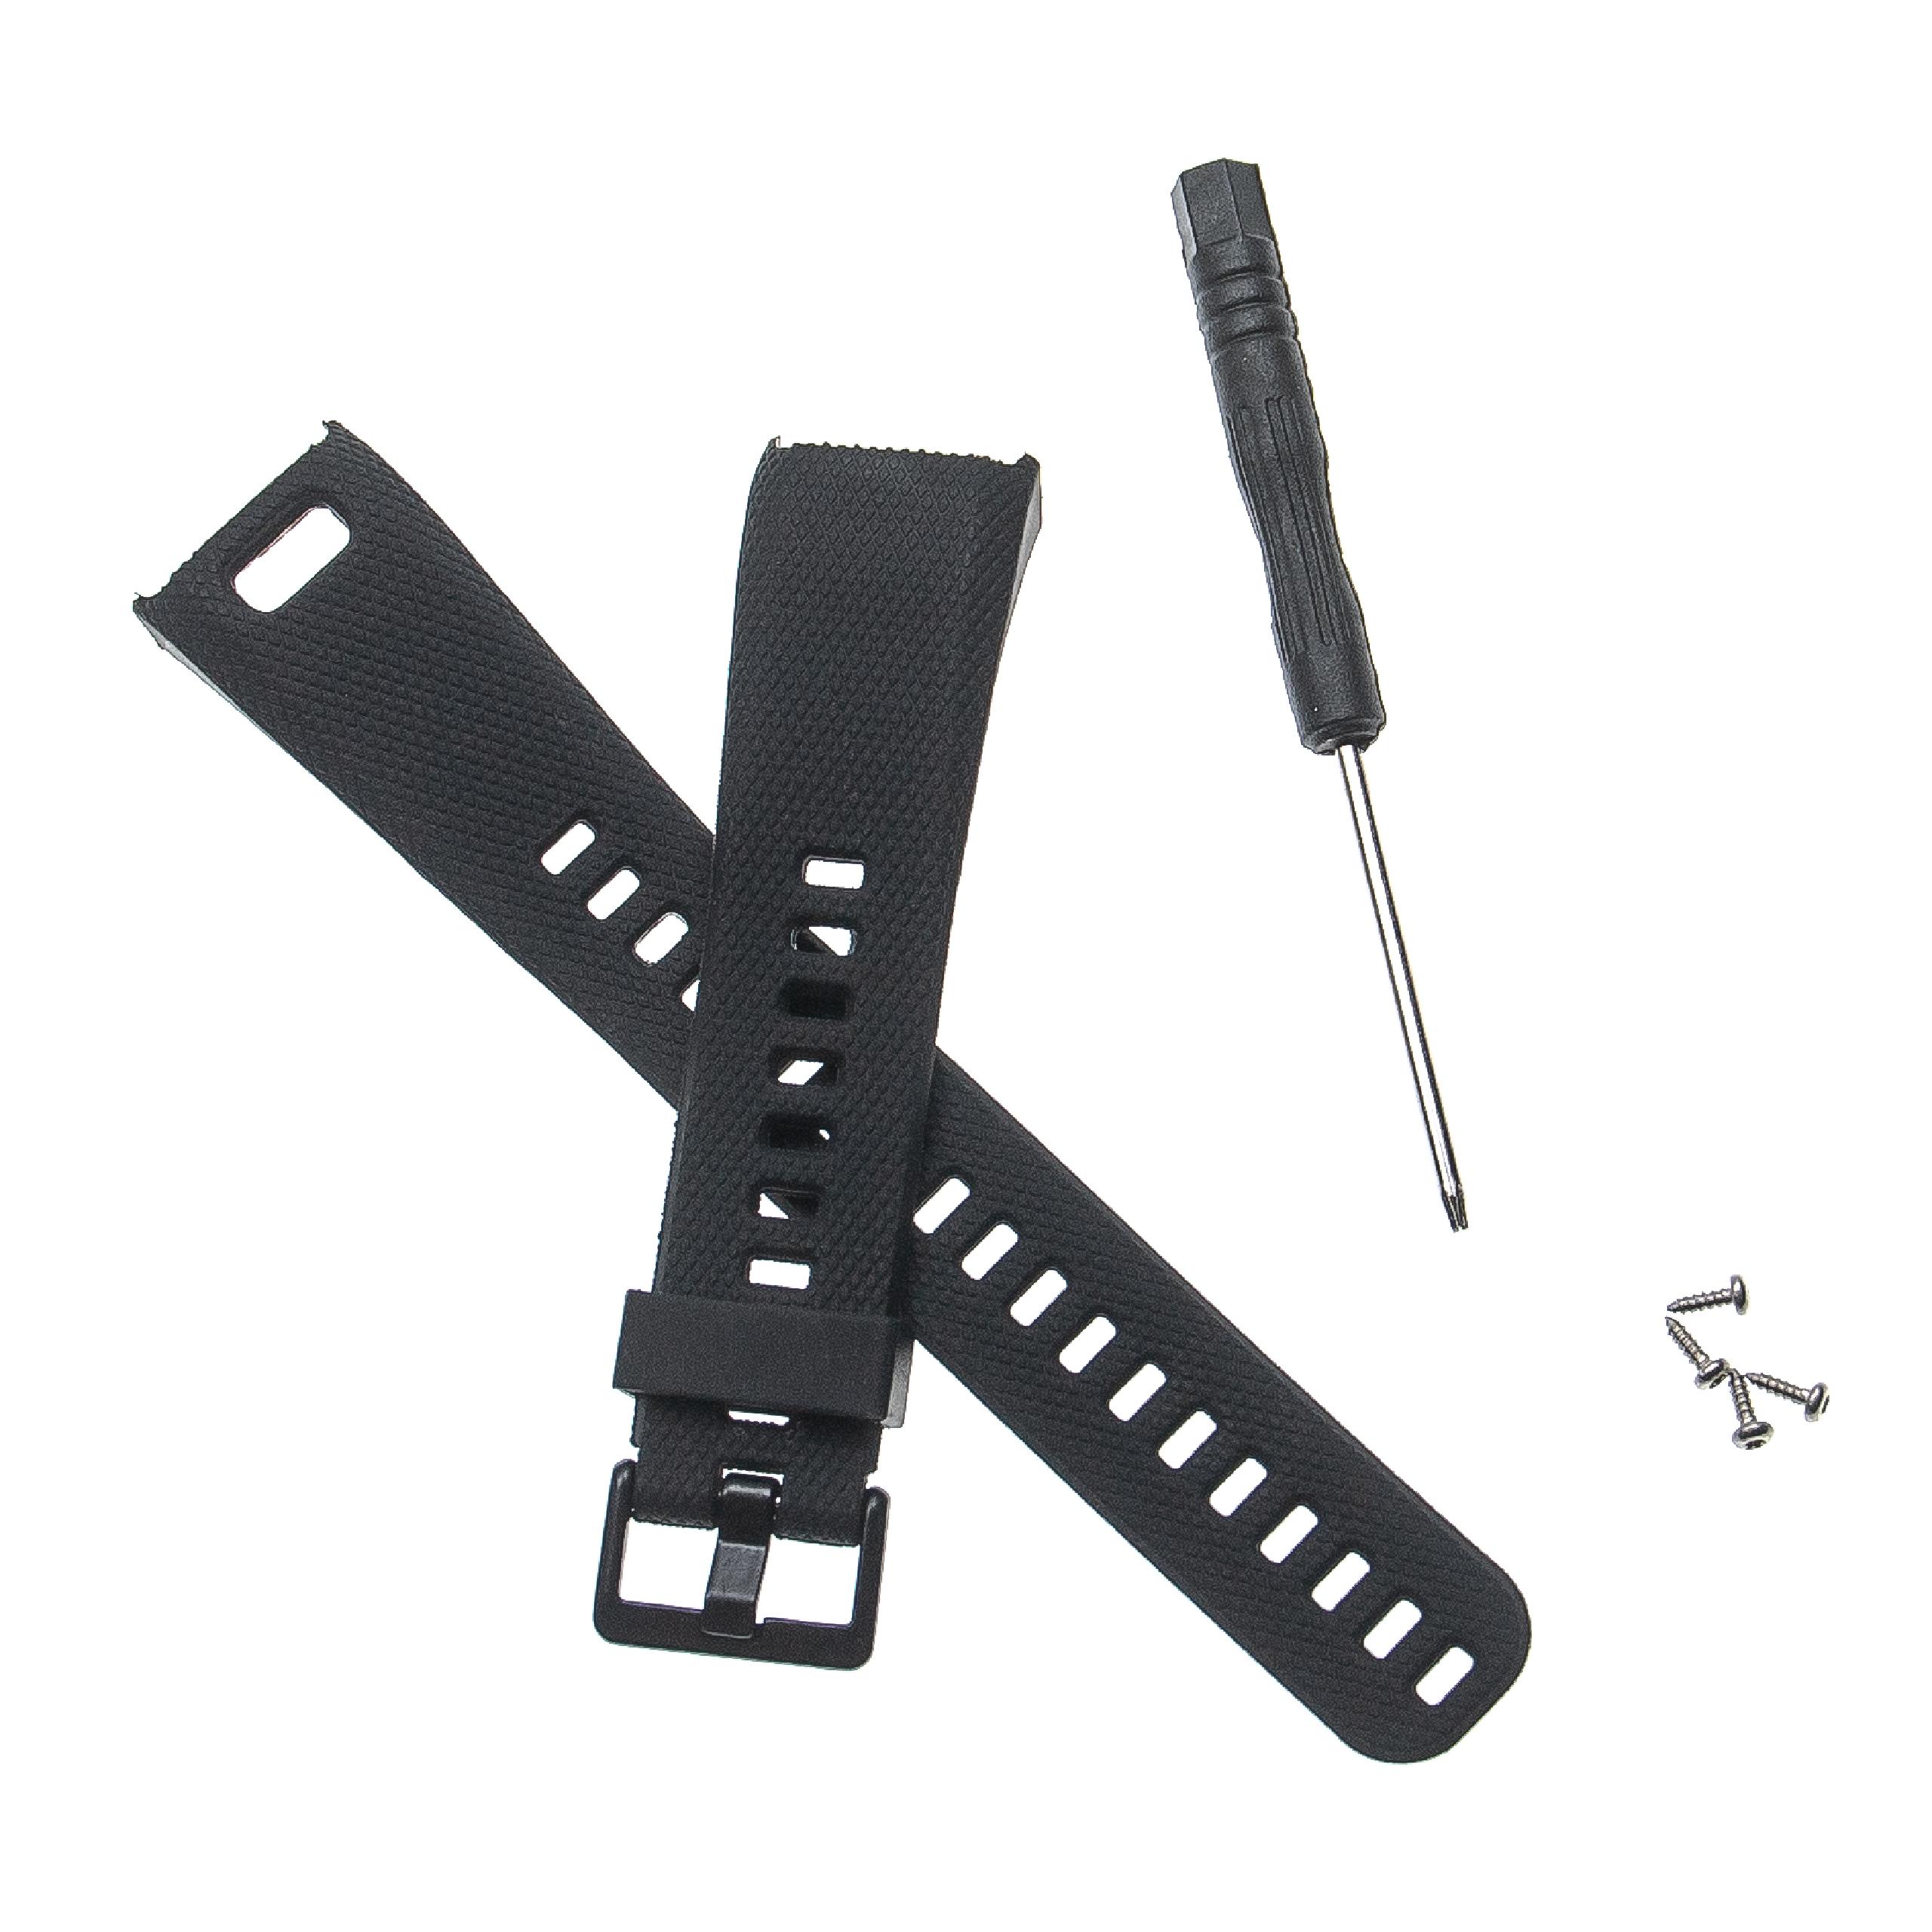 Armband für Garmin Vivosmart Smartwatch - 12,7 + 8,8 cm lang, 20mm breit, TPU, schwarz